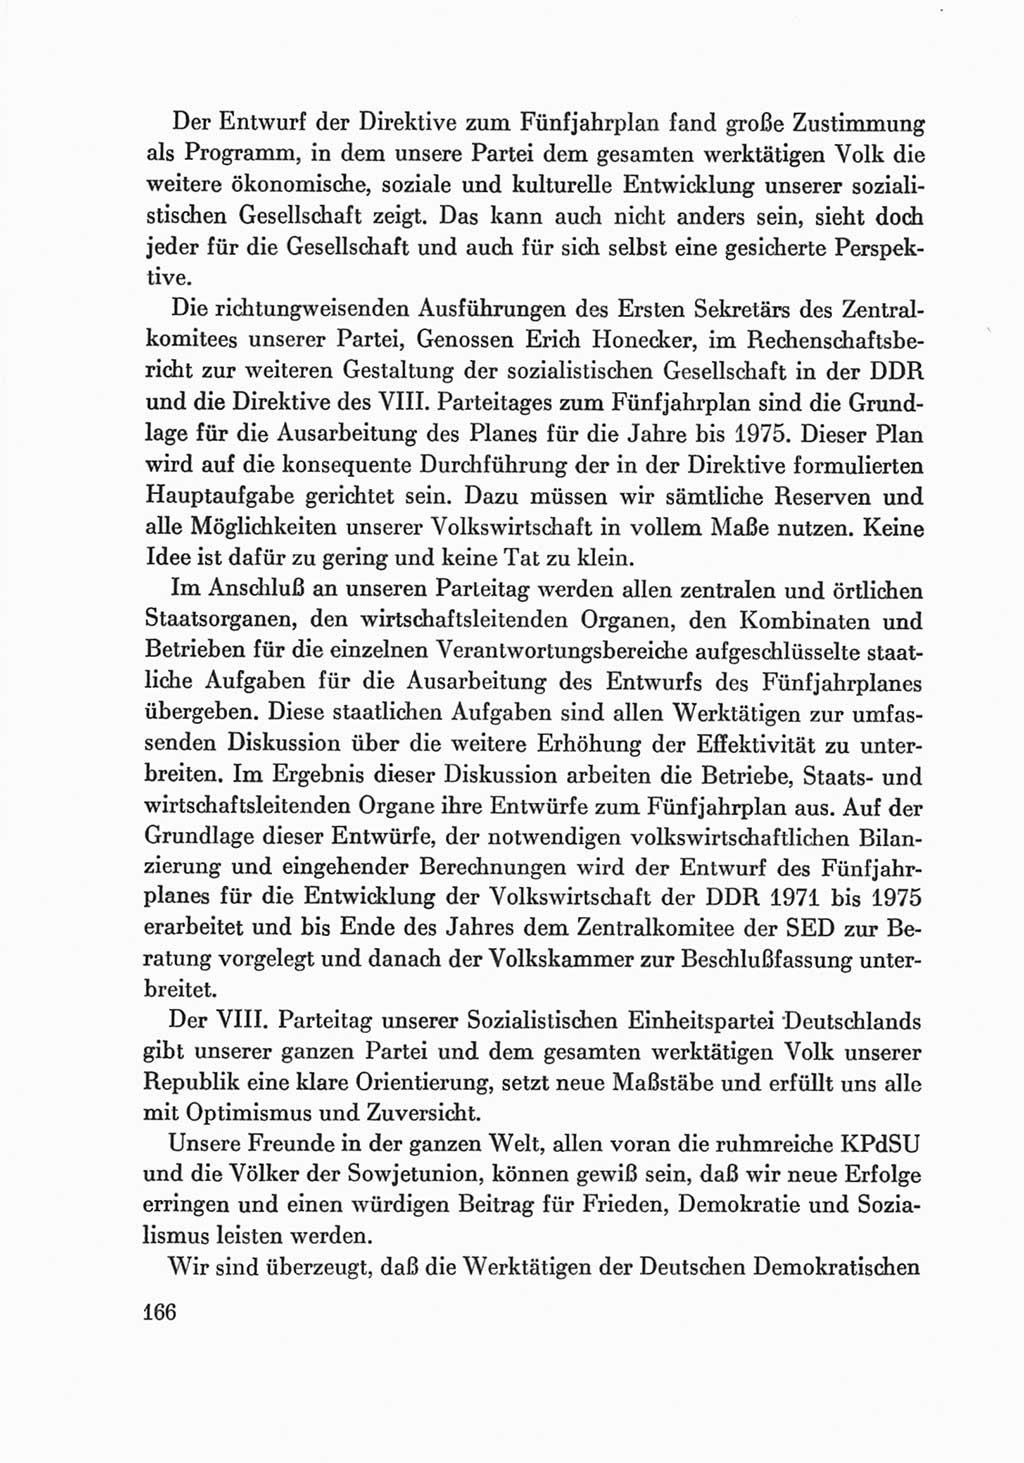 Protokoll der Verhandlungen des Ⅷ. Parteitages der Sozialistischen Einheitspartei Deutschlands (SED) [Deutsche Demokratische Republik (DDR)] 1971, Band 2, Seite 166 (Prot. Verh. Ⅷ. PT SED DDR 1971, Bd. 2, S. 166)